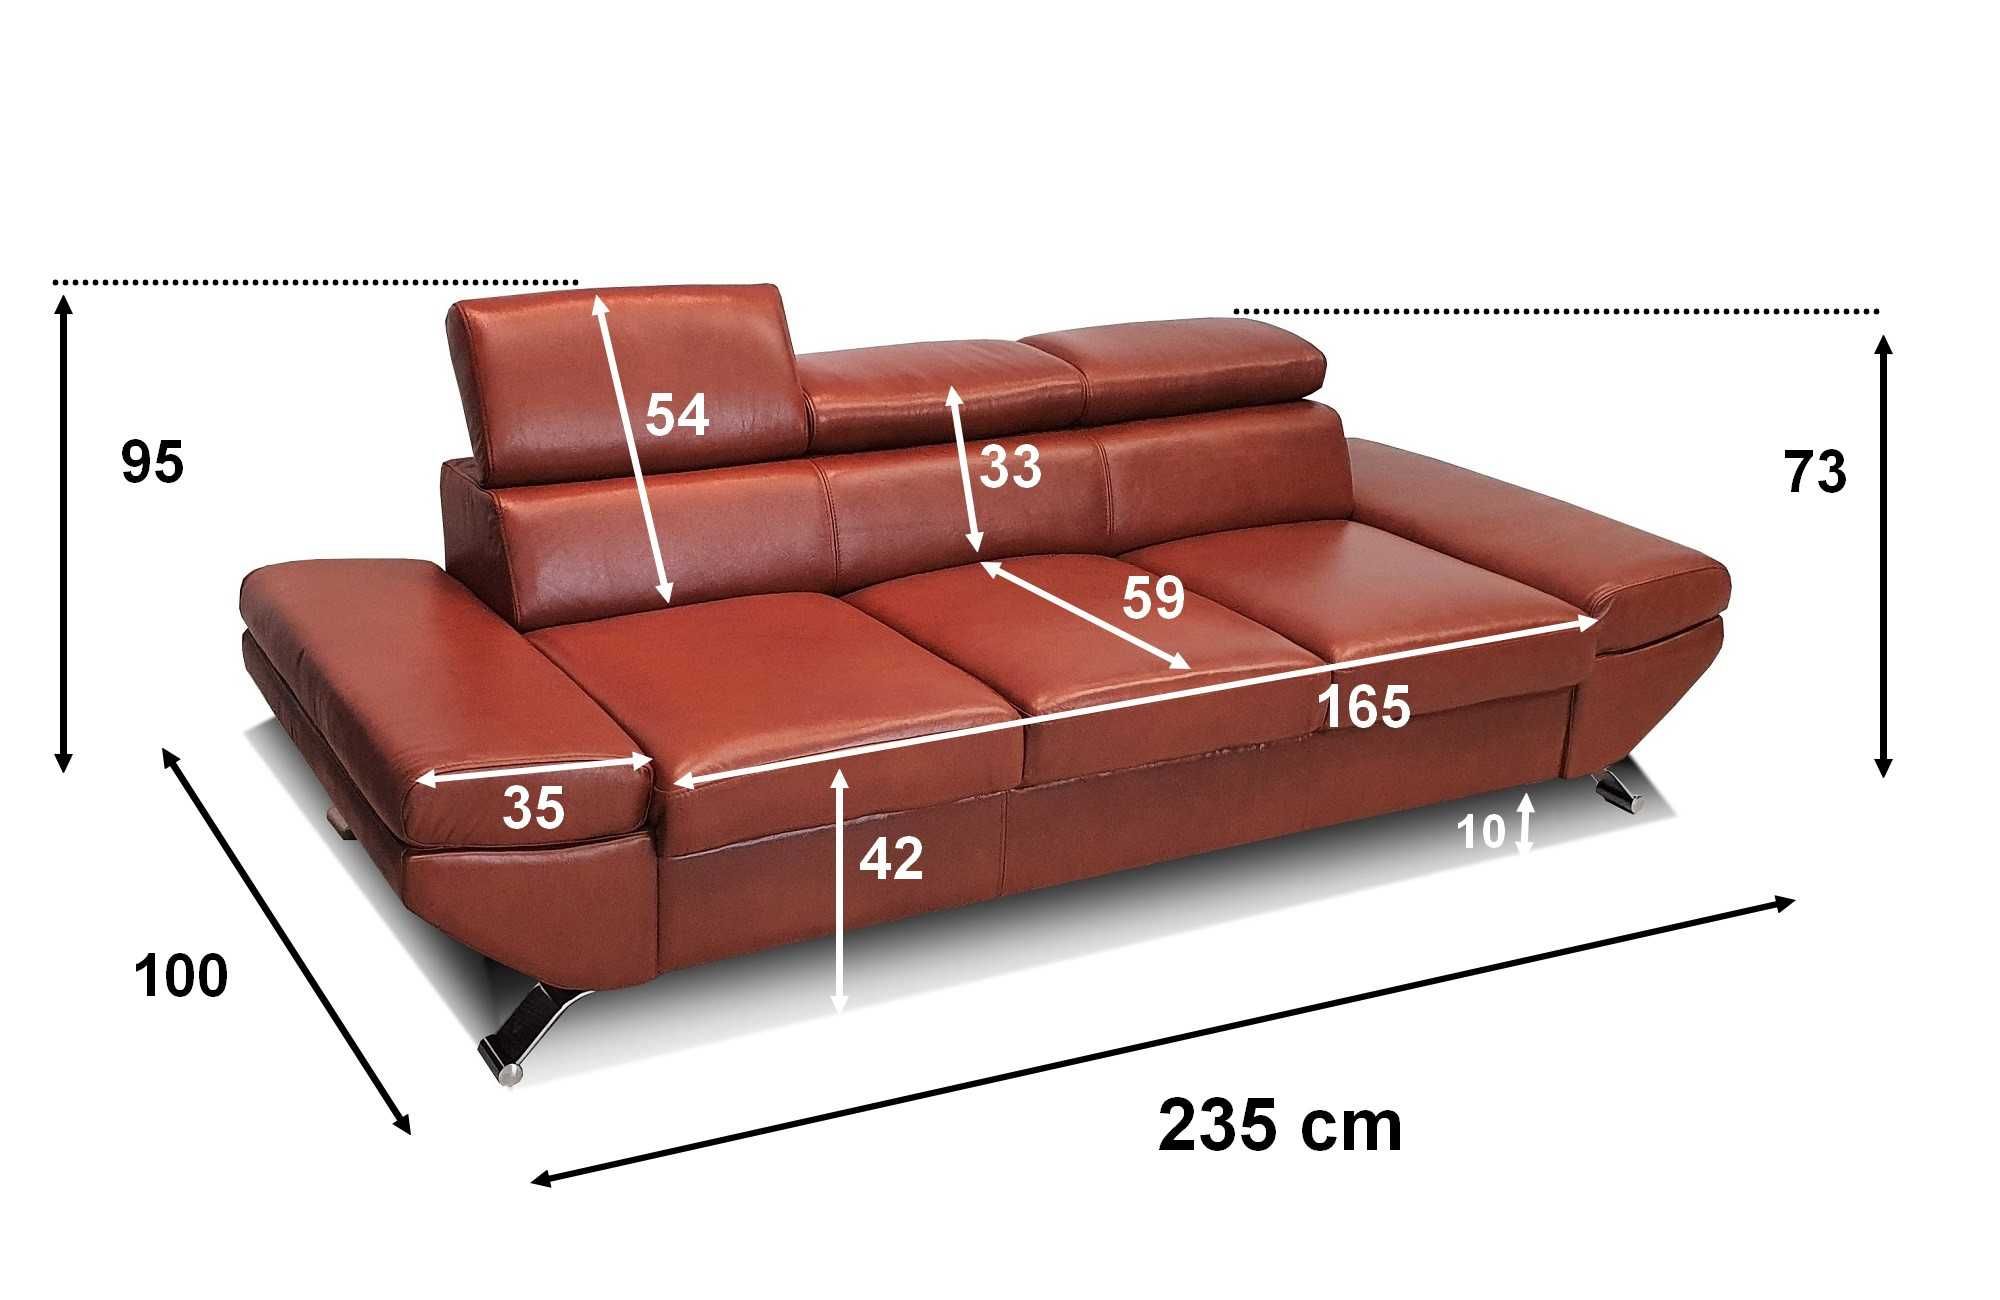 Piękna sofa 3os ze skóry, kanapa 235cm skórzana, wersalka SKÓRA natur.